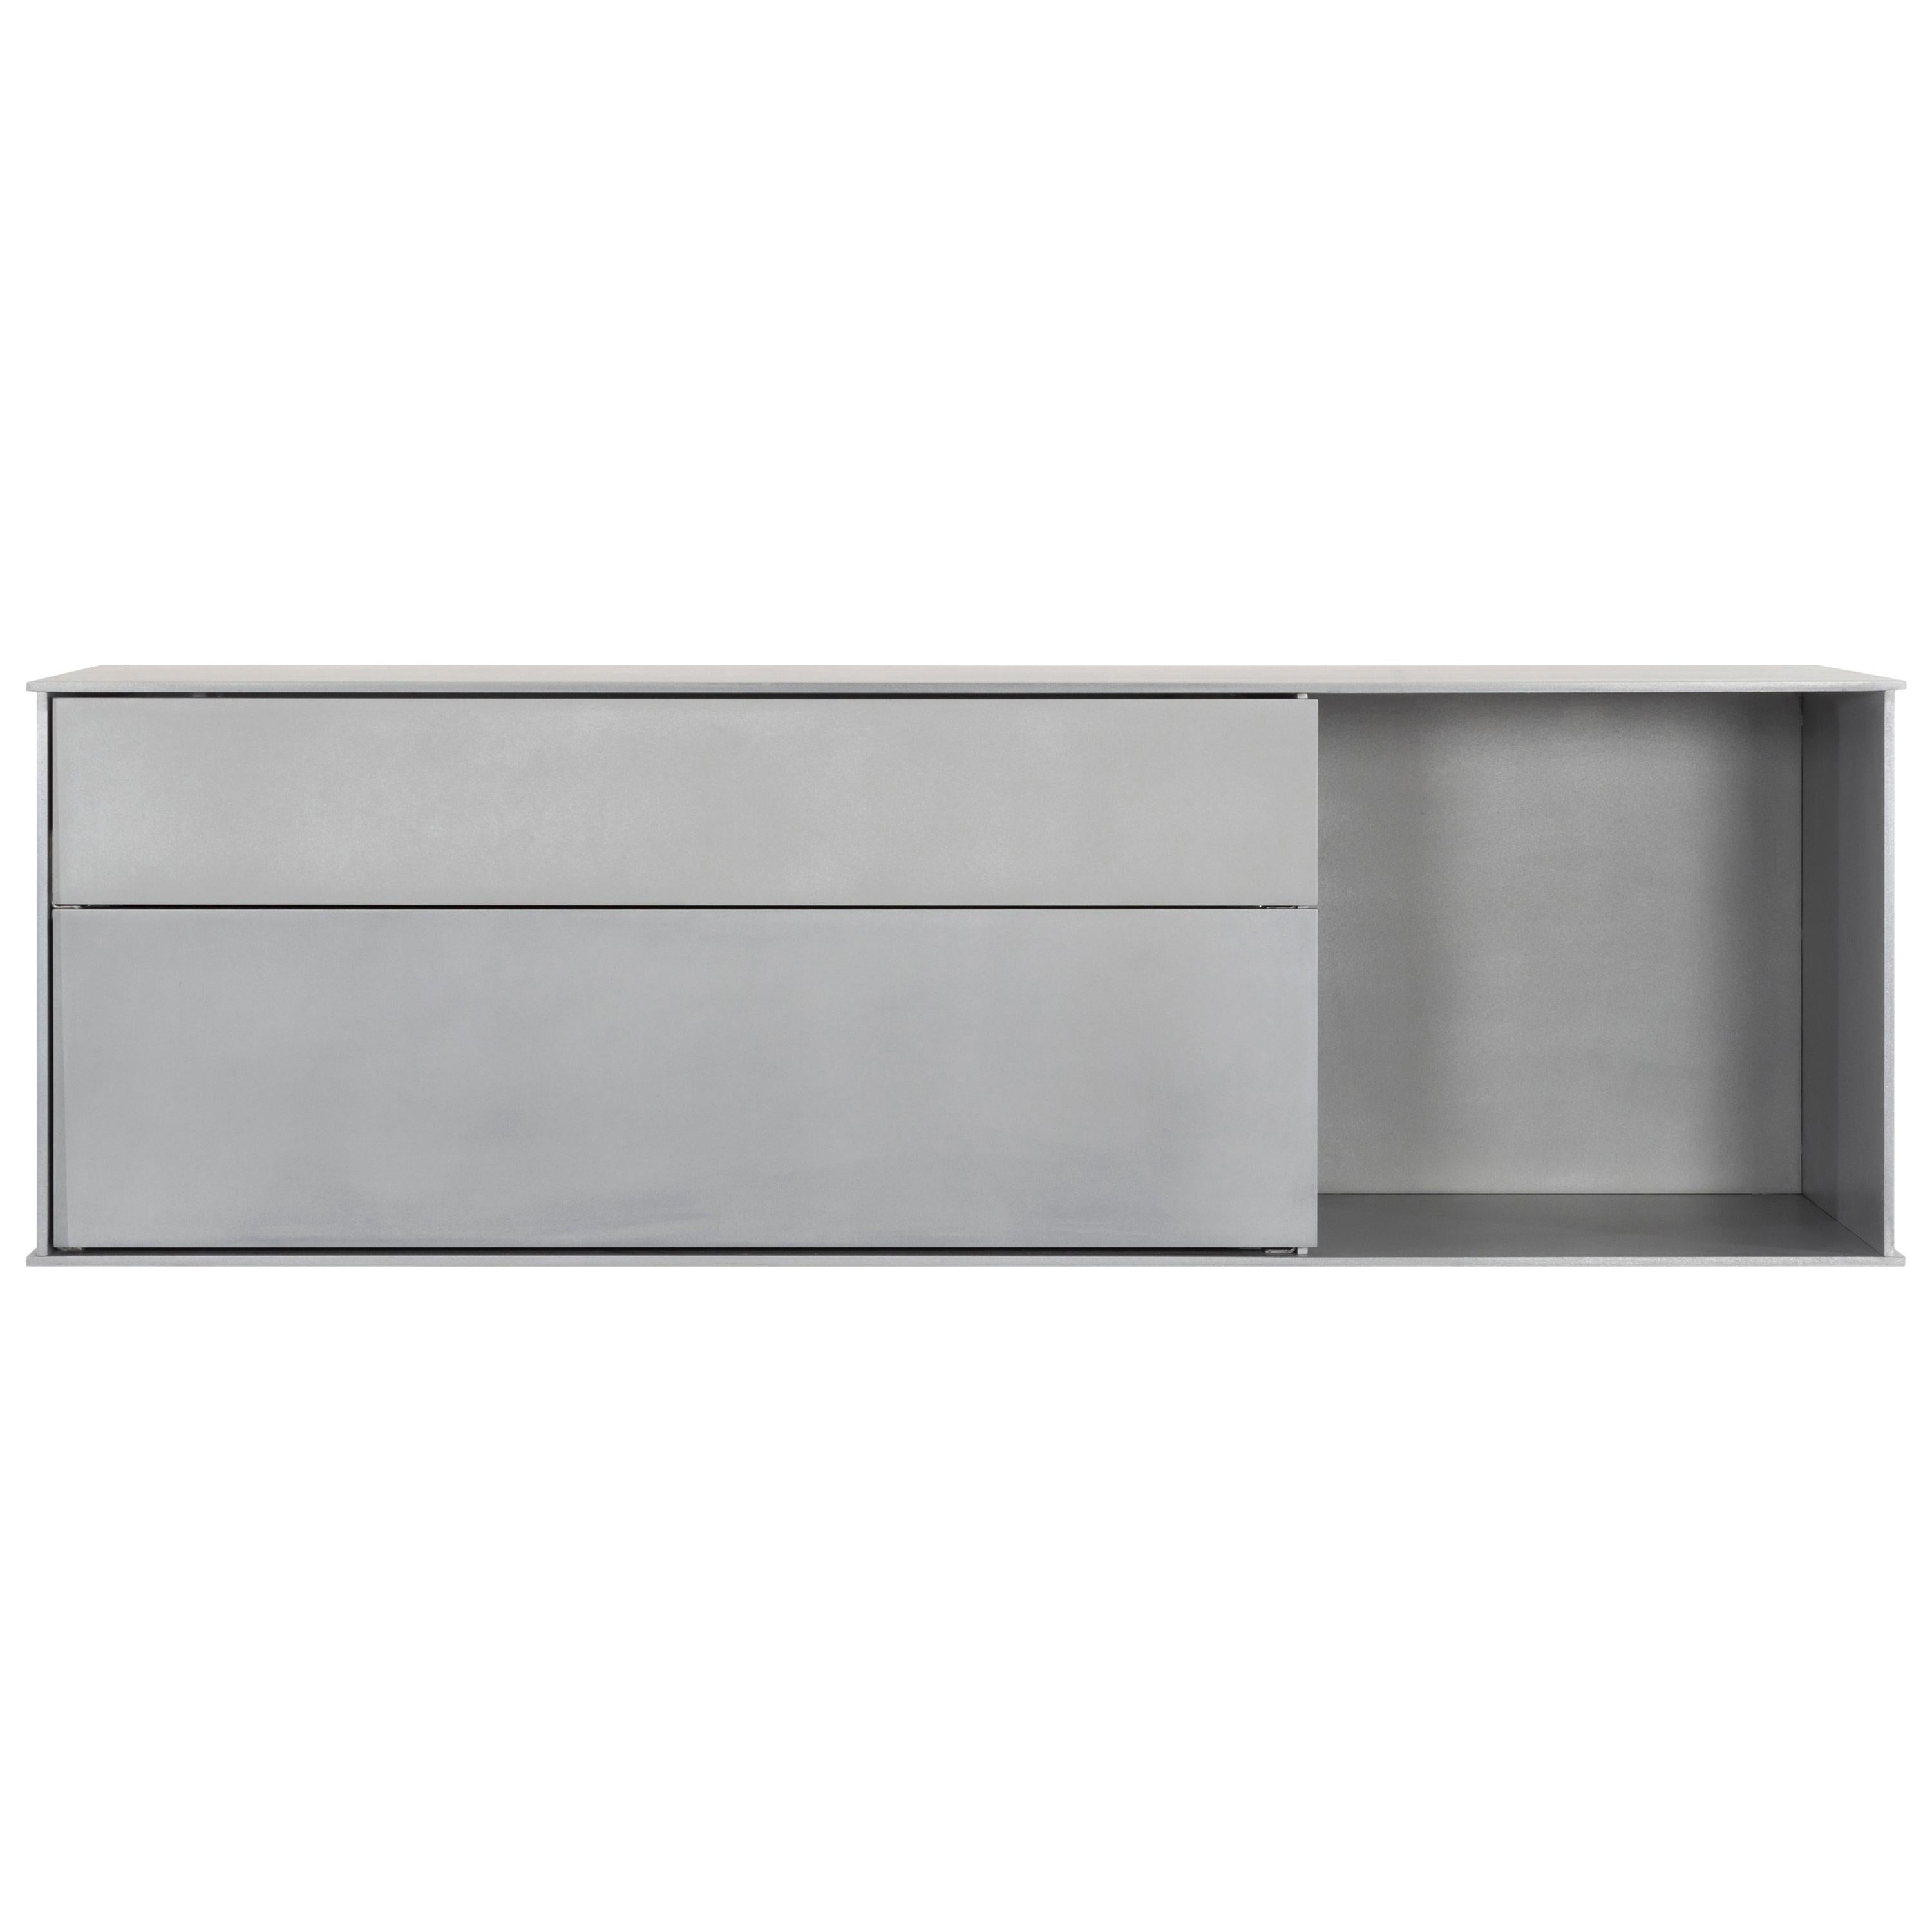 OG-Wandregal mit Schubladen in gewachstem Aluminiumblech von Jonathan Nesci